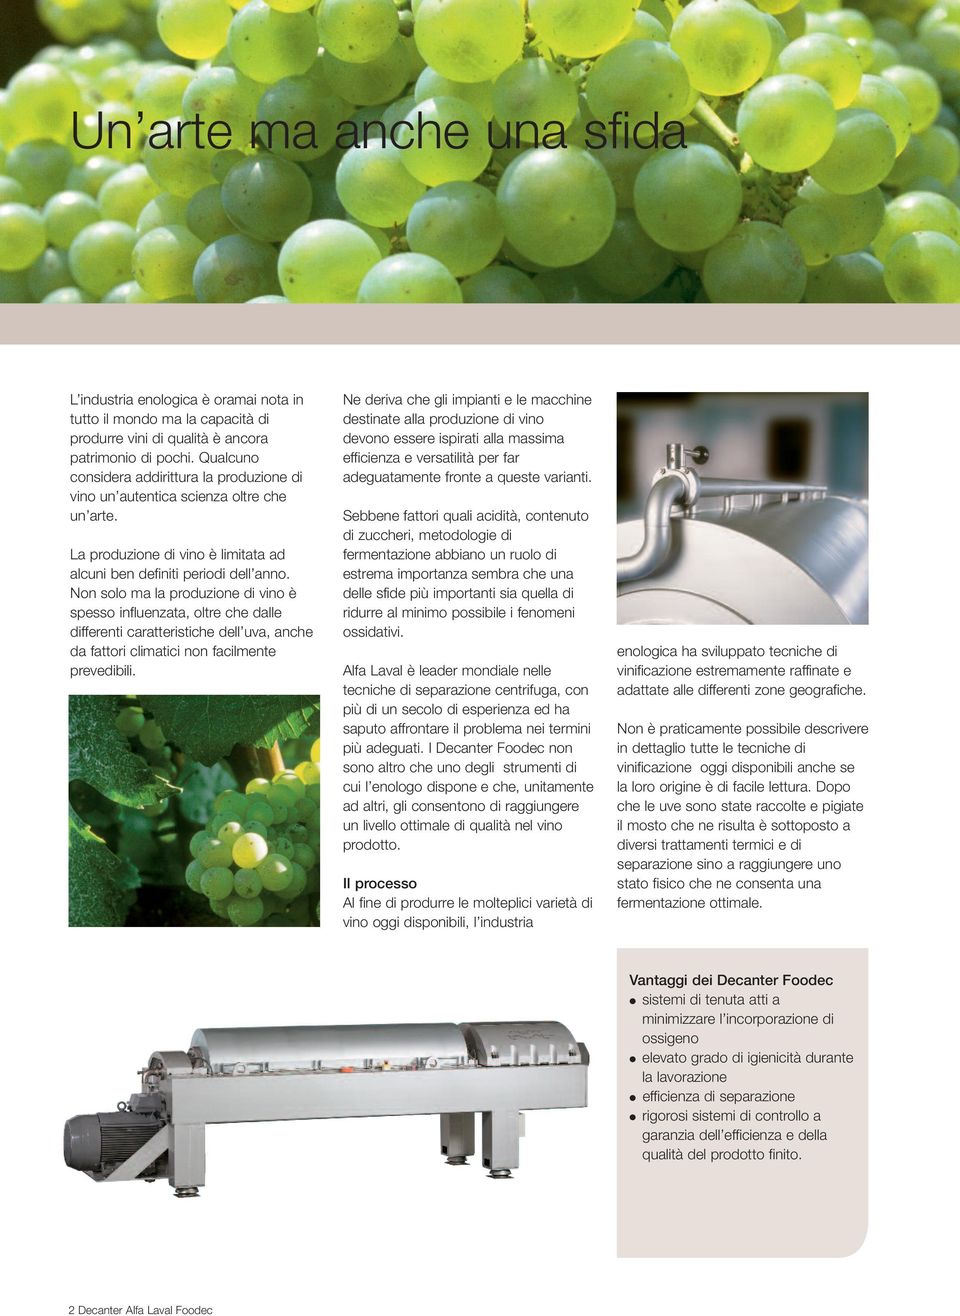 Non solo ma la produzione di vino è spesso influenzata, oltre che dalle differenti caratteristiche dell uva, anche da fattori climatici non facilmente prevedibili.